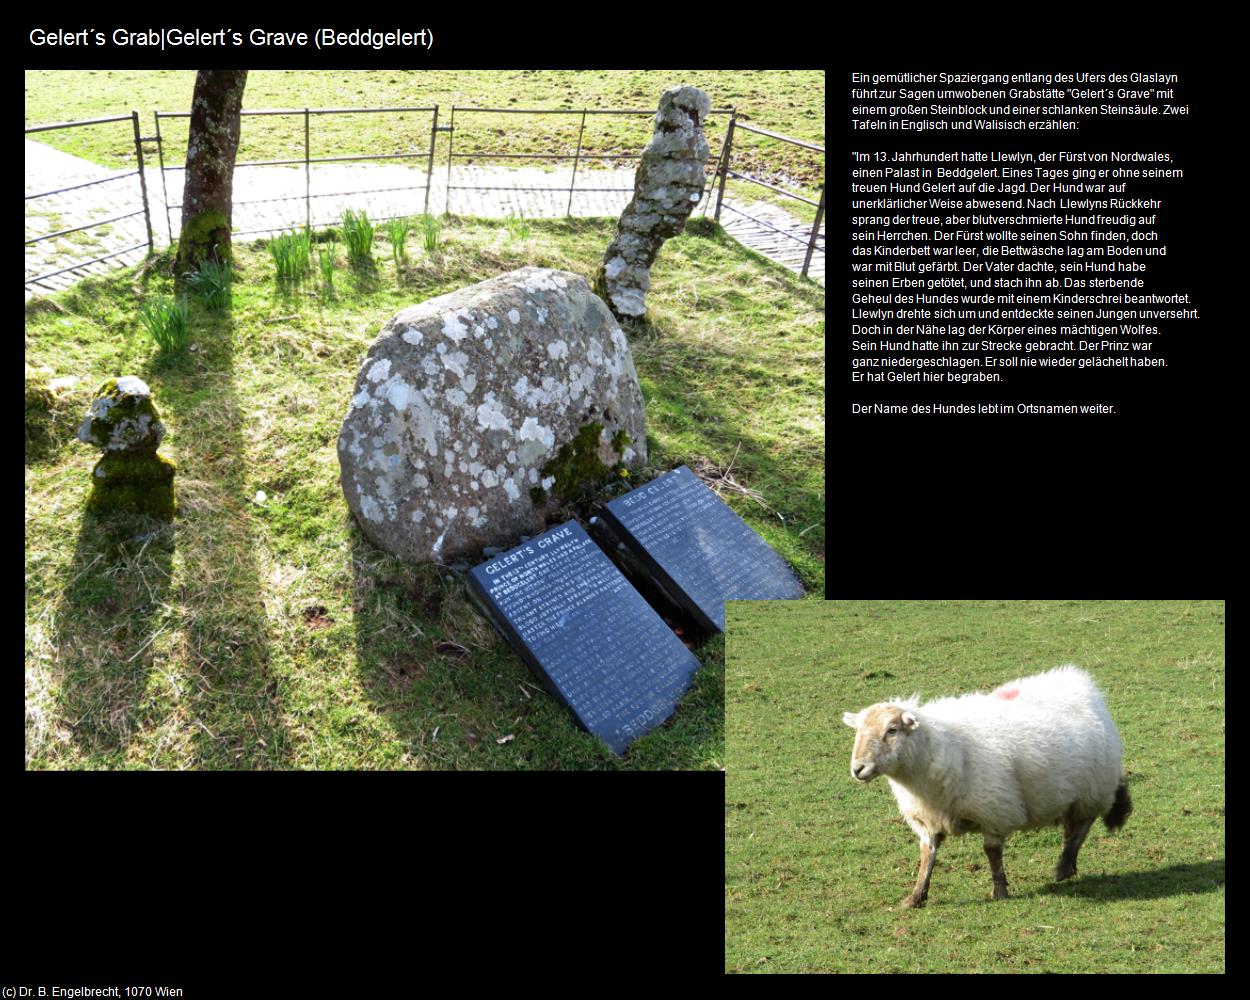 Gelert‘s Grab|Gelert‘s Grave (Beddgelert) (Beddgelert, Wales) in Kulturatlas-ENGLAND und WALES